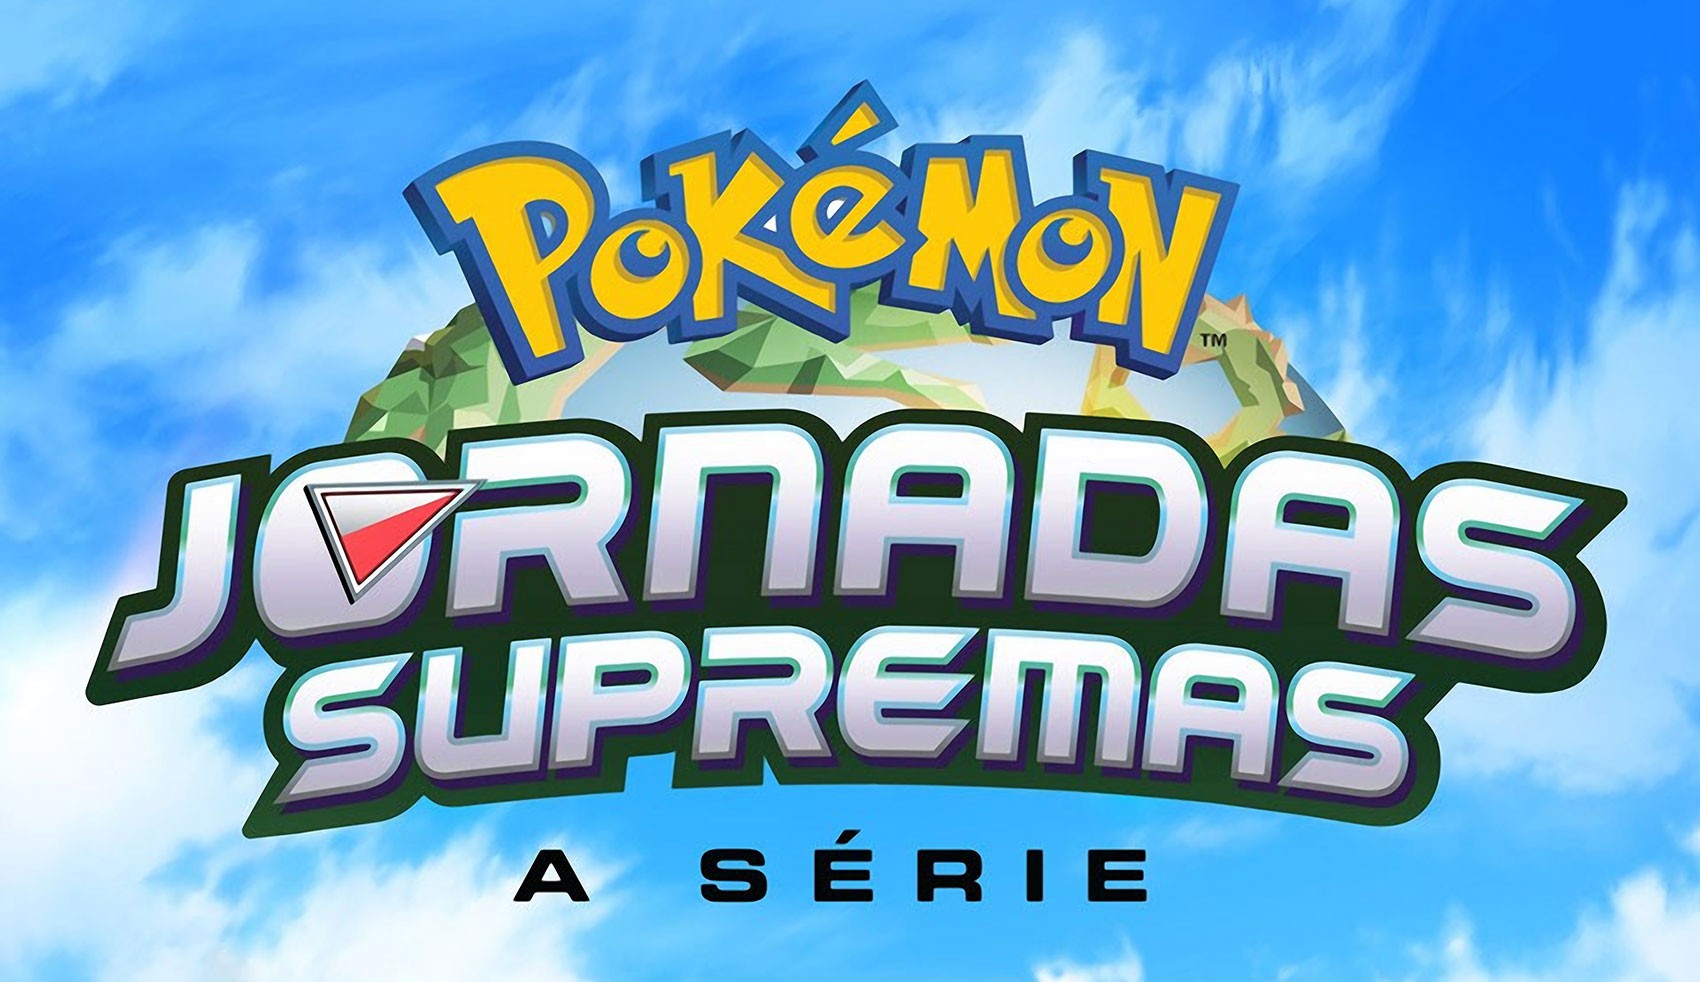 Próxima temporada de Pokémon tem nome revelado e ganha trailer